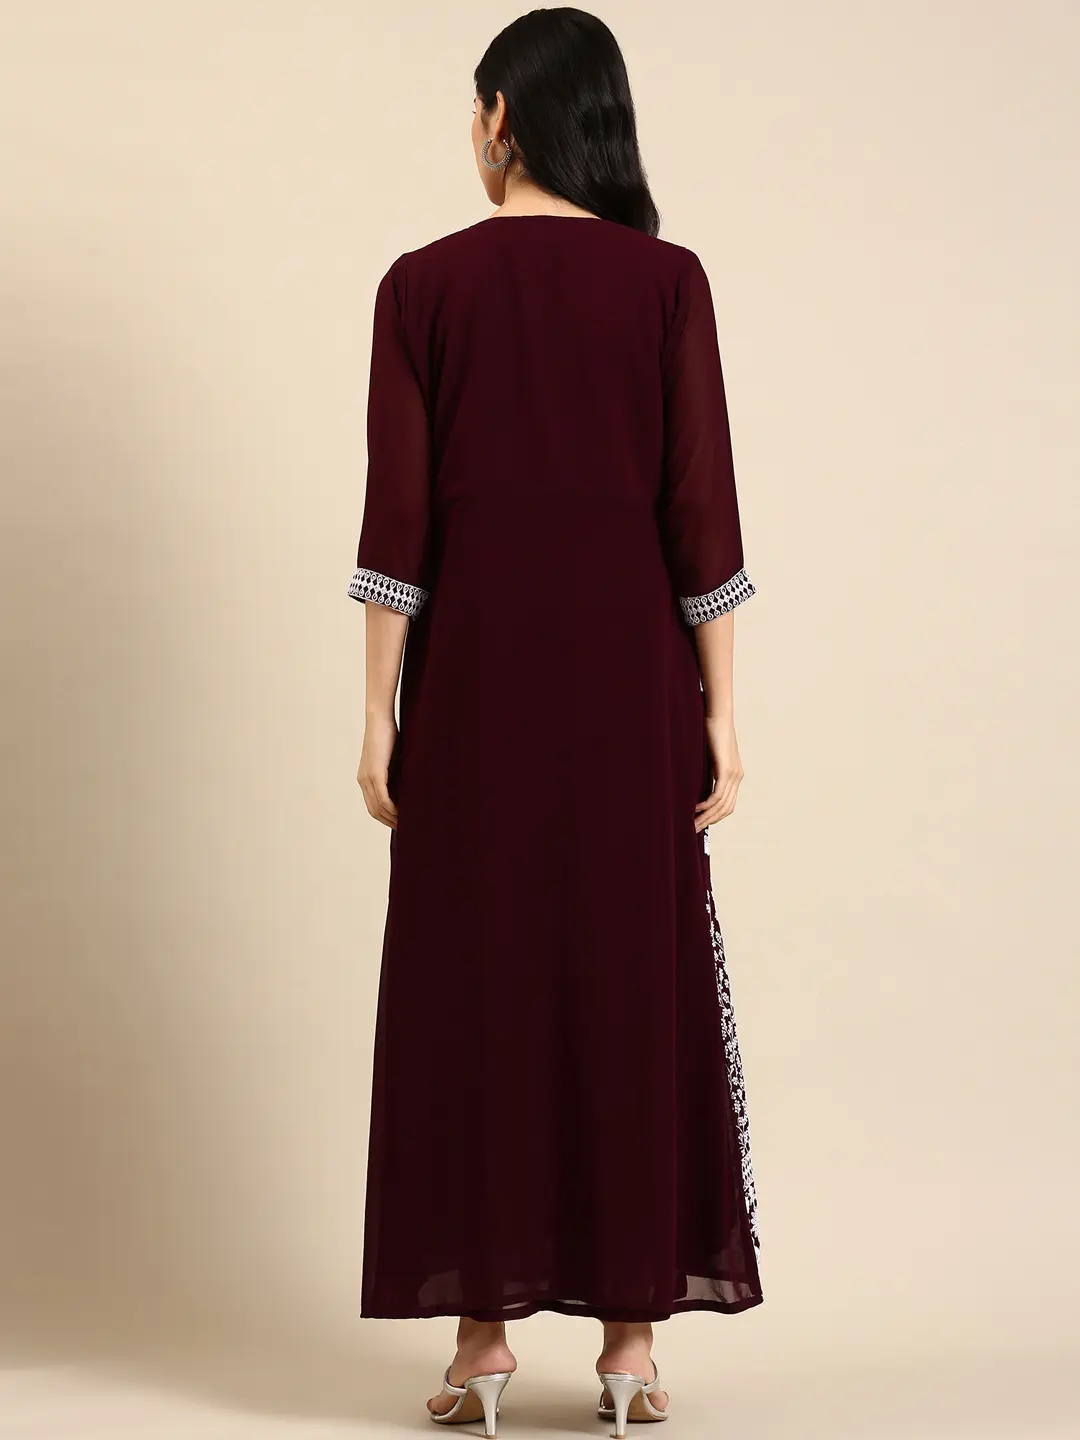 SHOWOFF Women Burgundy Embellished Round Neck Sleeveless Ankle Length A-Line Kurta